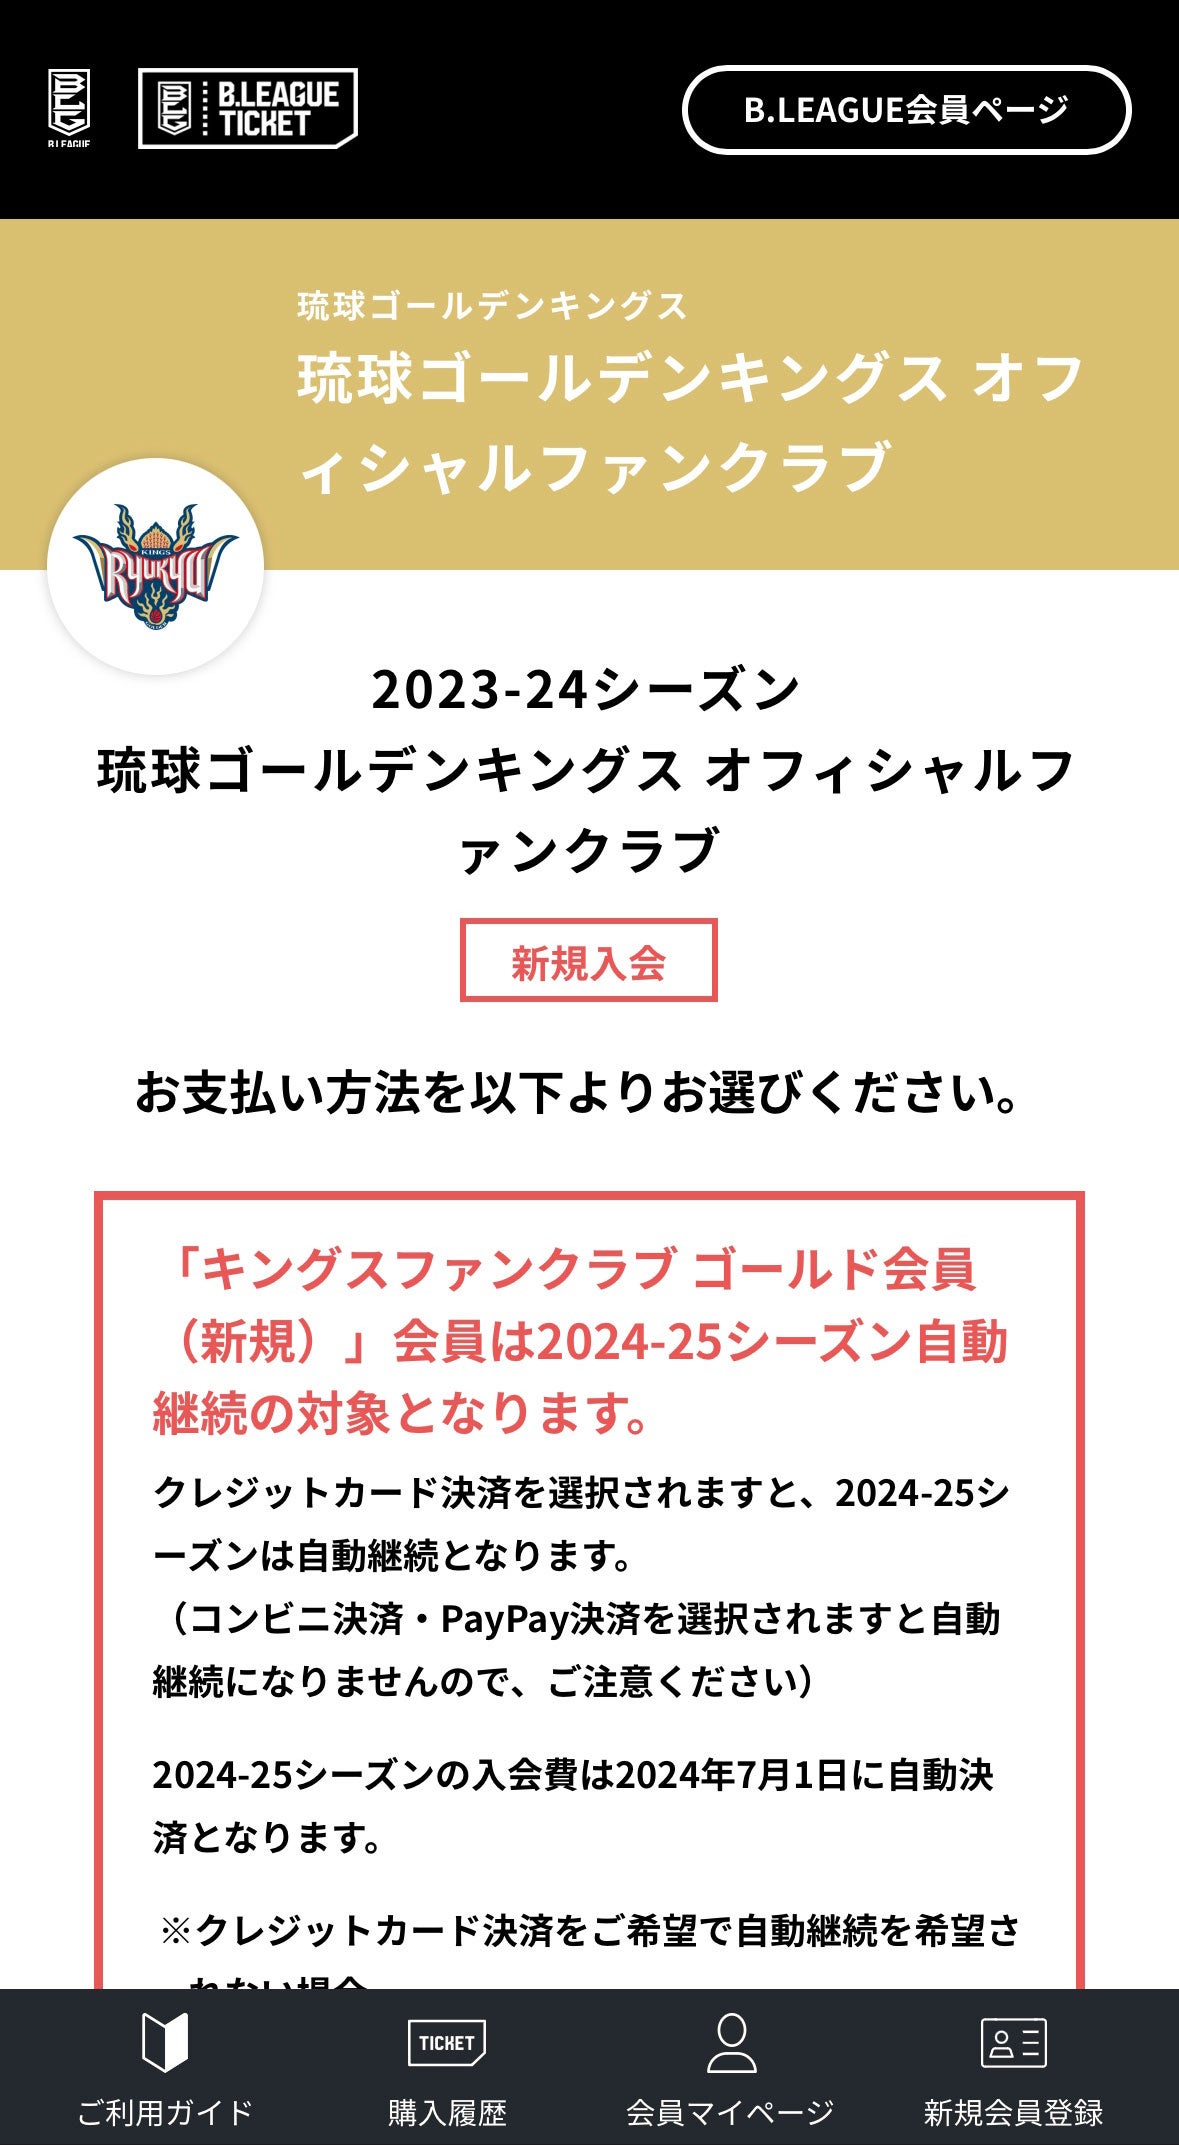 琉球ゴールデンキングス 2023-2024 ファンクラブ特典